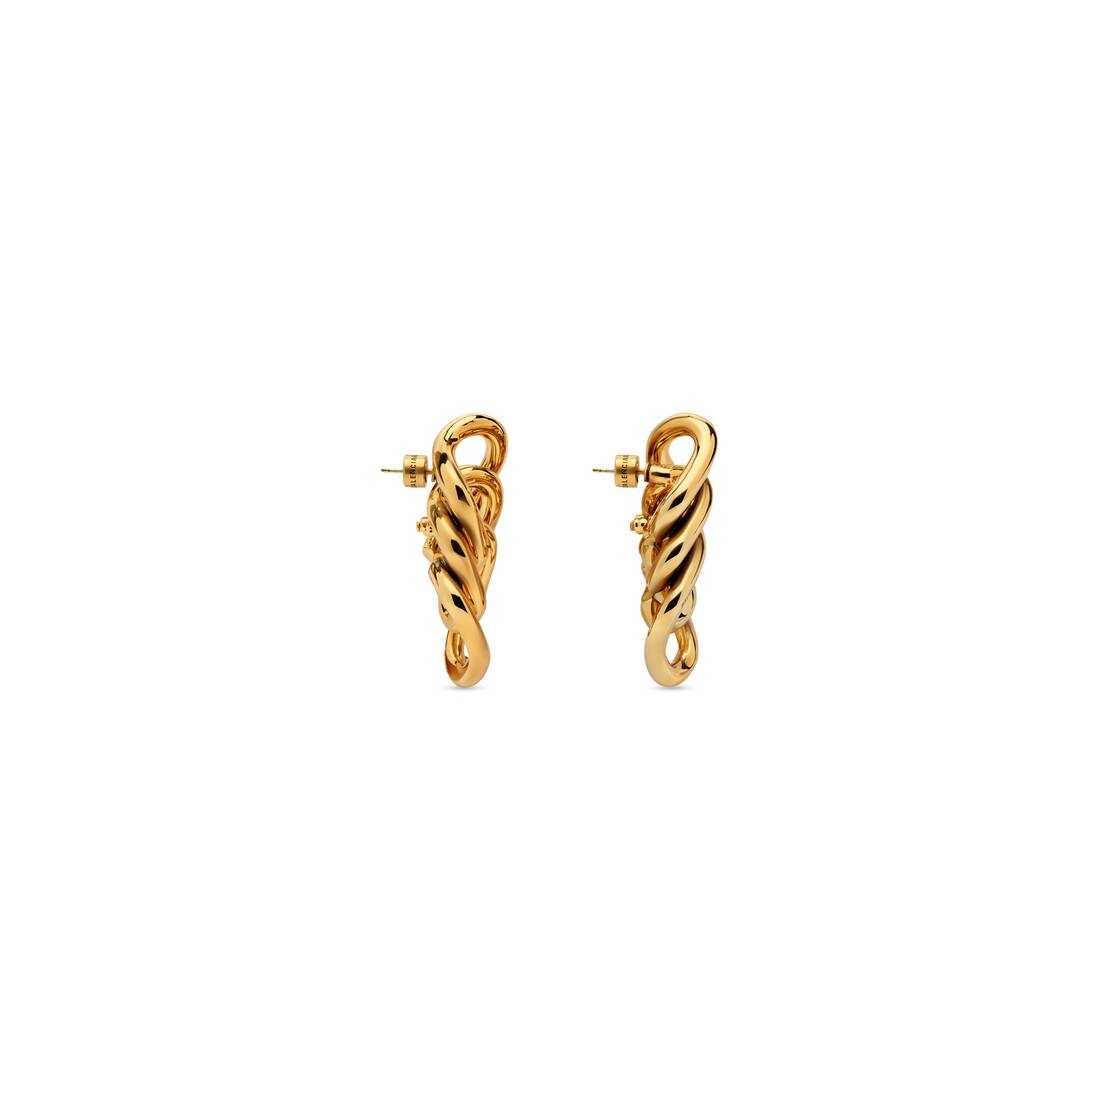 Women's Linked Earrings in Gold - 3